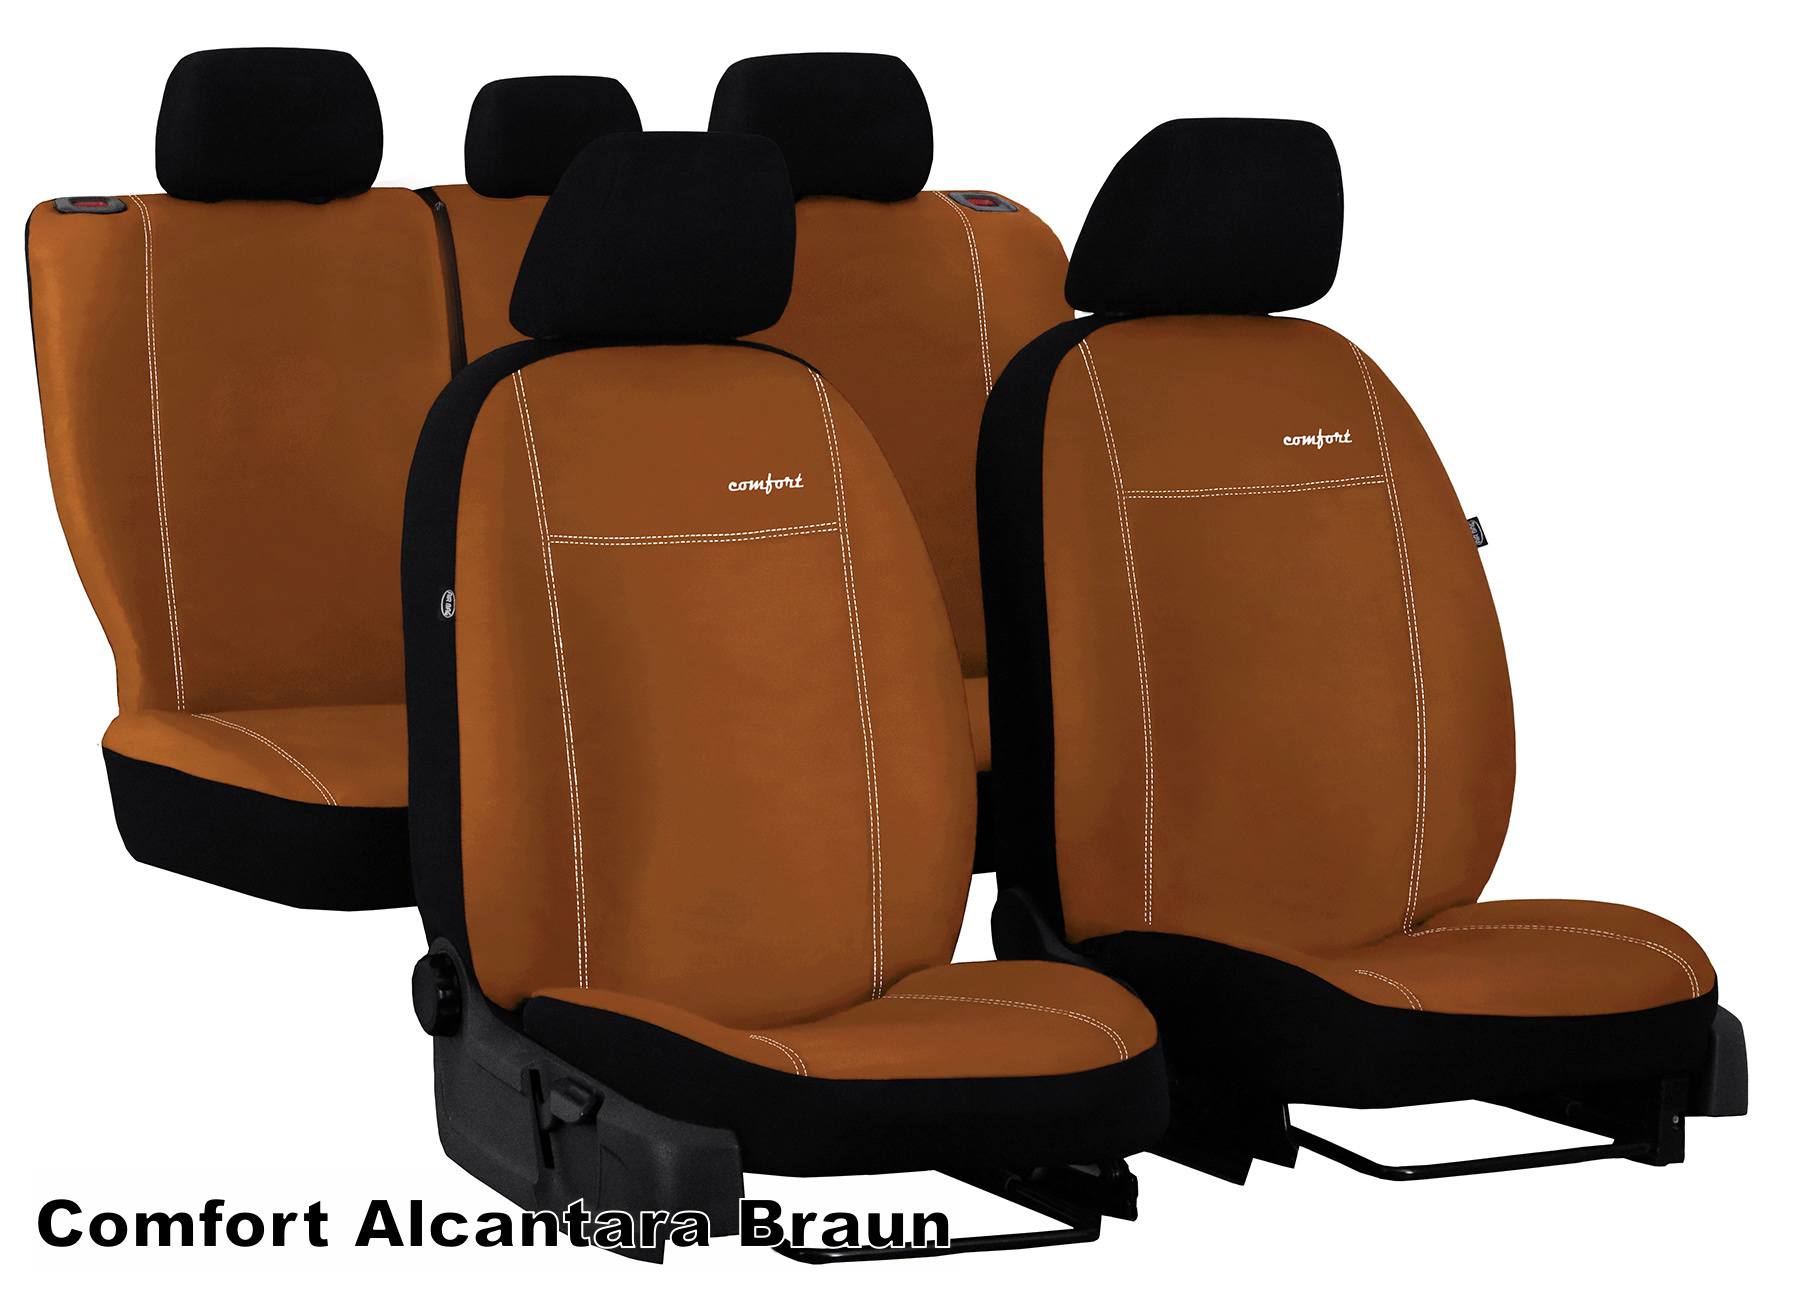 Universal Auto-Sitzbezüge Set Leder Schwarz Sitzbezüge Schonbezüge für VW